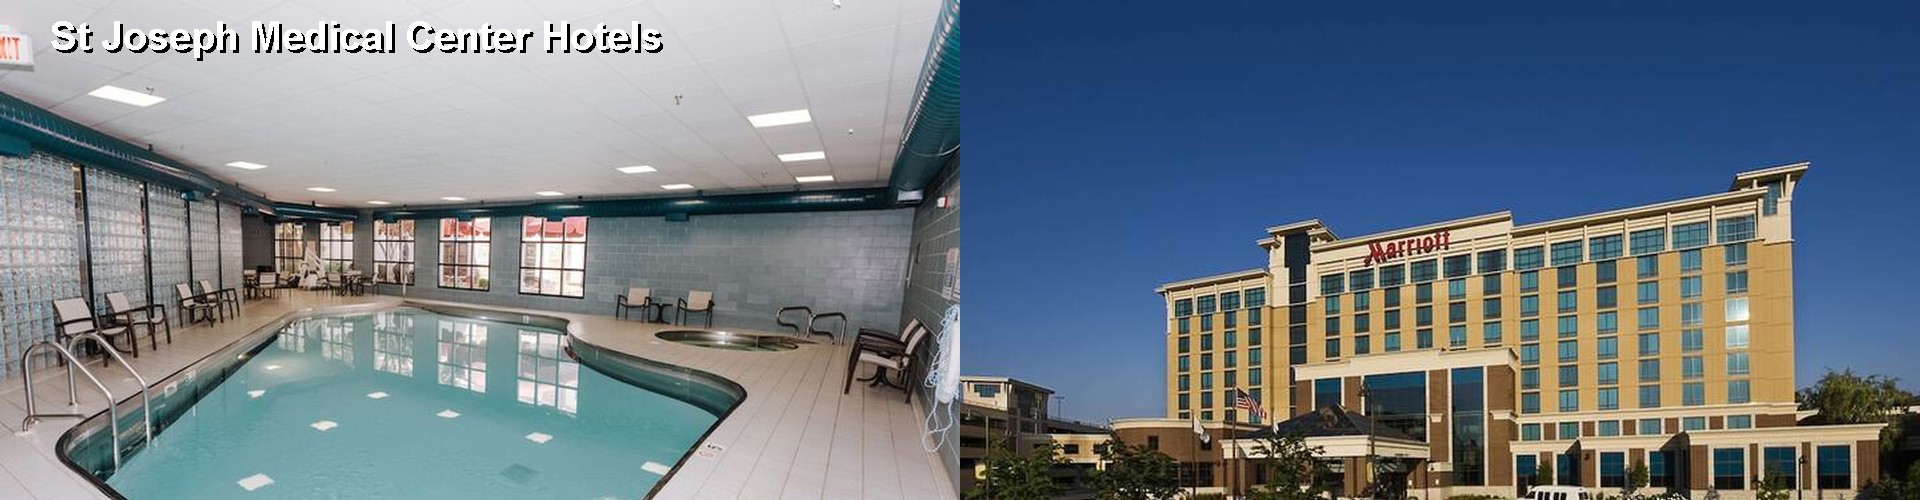 5 Best Hotels near St Joseph Medical Center